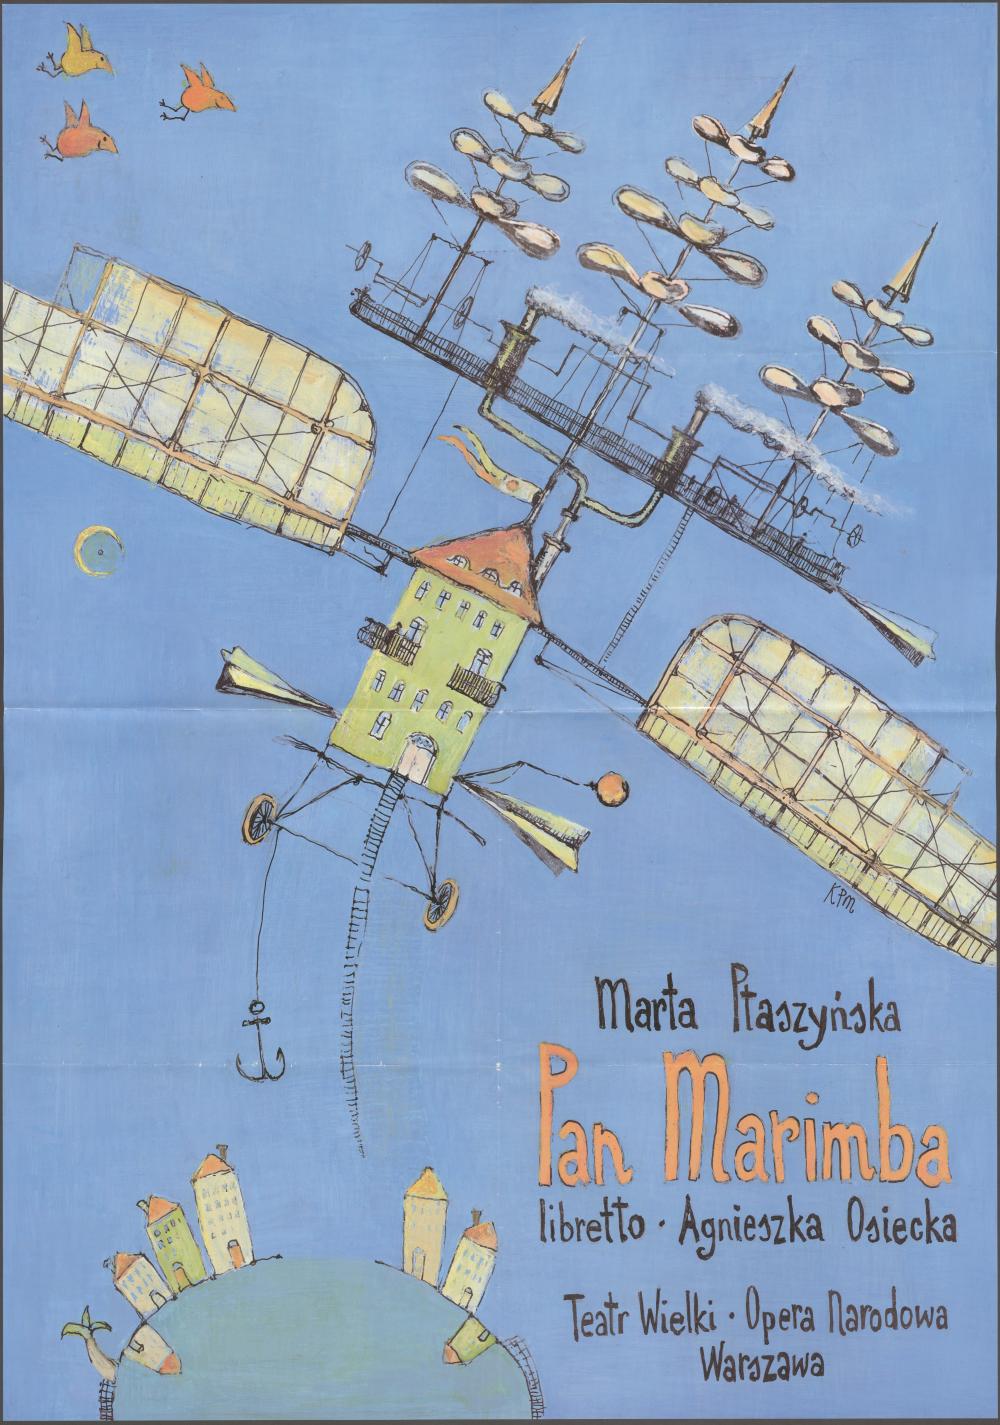 Plakat „Pan Marimba” Marta Ptaszyńska 27-09-1998